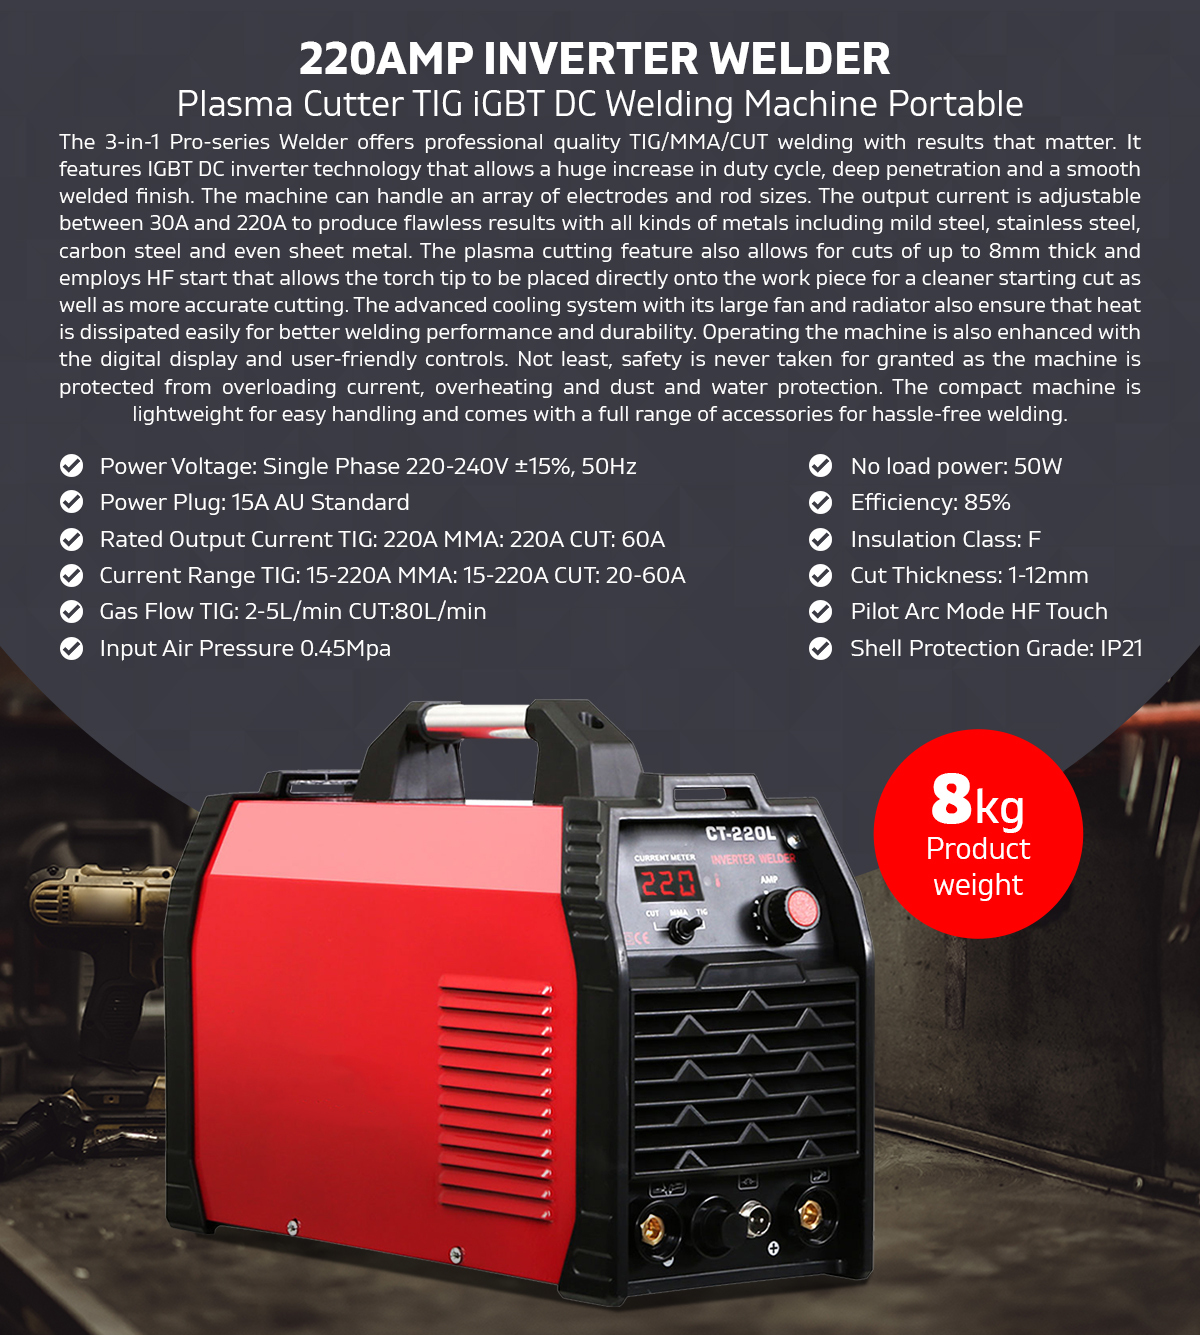 Inverter 220Amp Welder Plasma Cutter TIG iGBT DC Portable Welding Machine